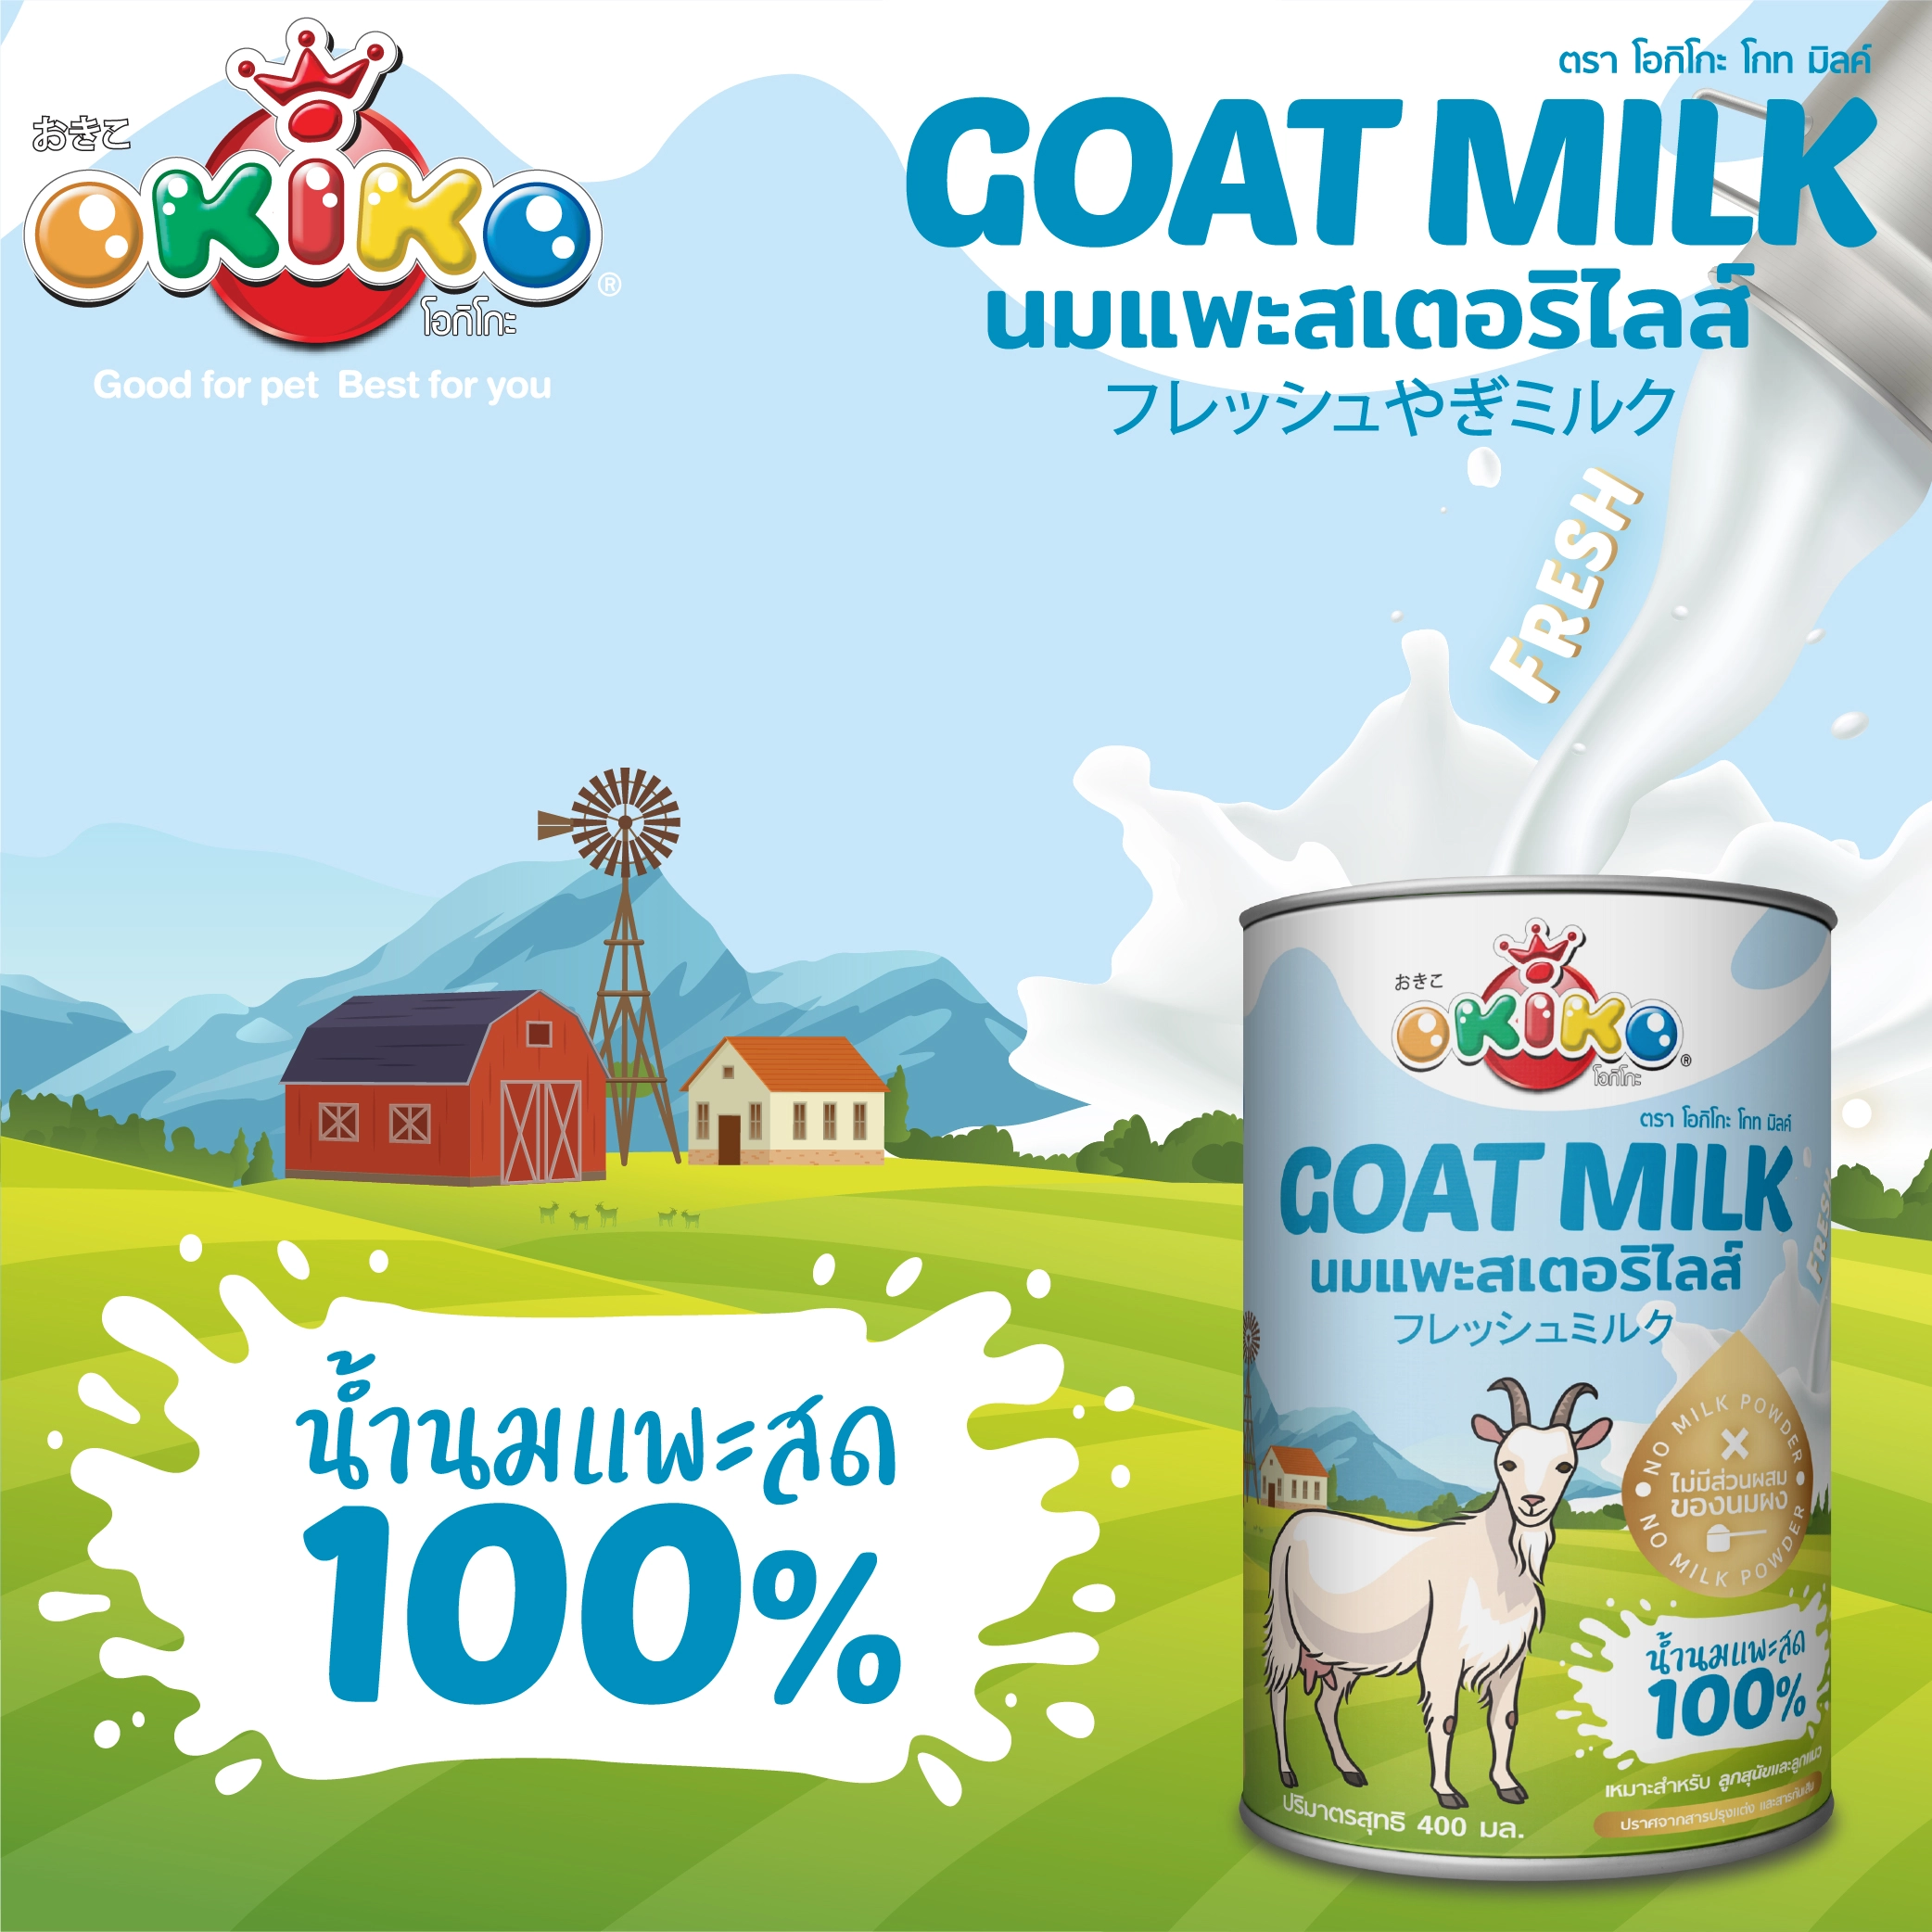 Okiko goat milk